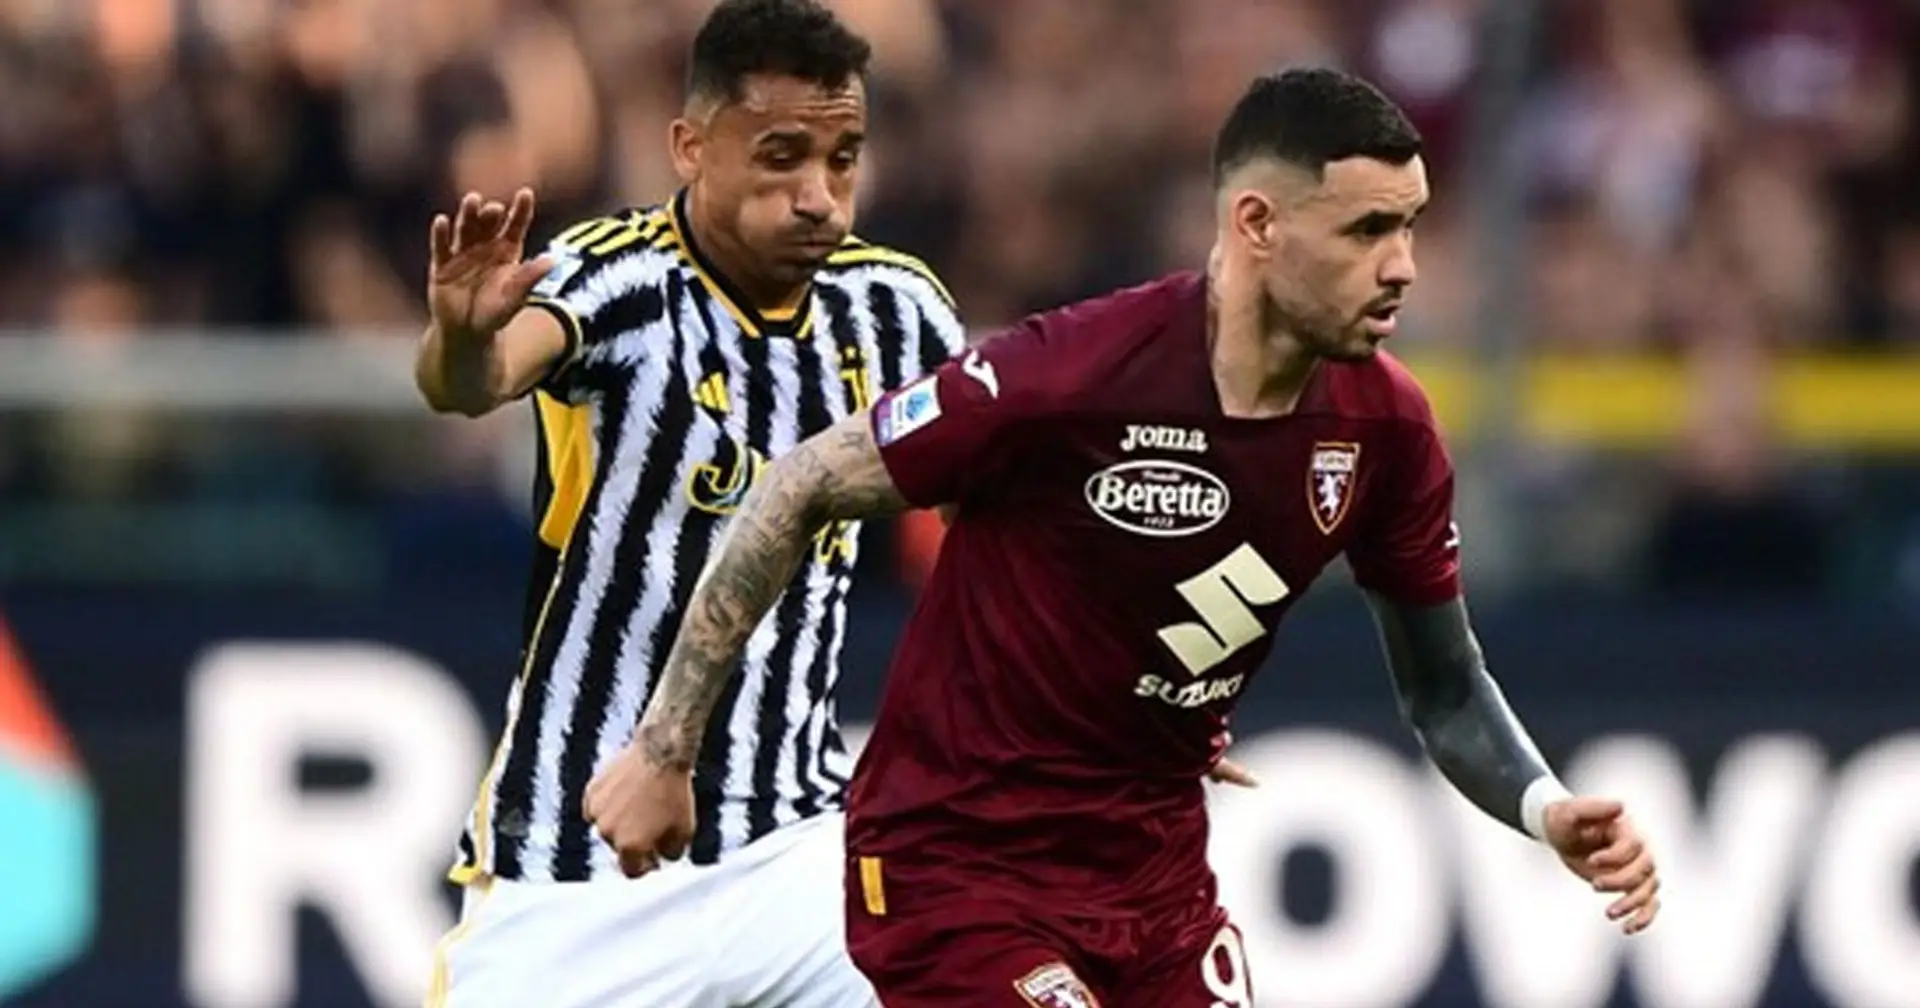 Scialbo 0-0 tra Torino e Juventus: statistiche, tabellino e sintesi del match